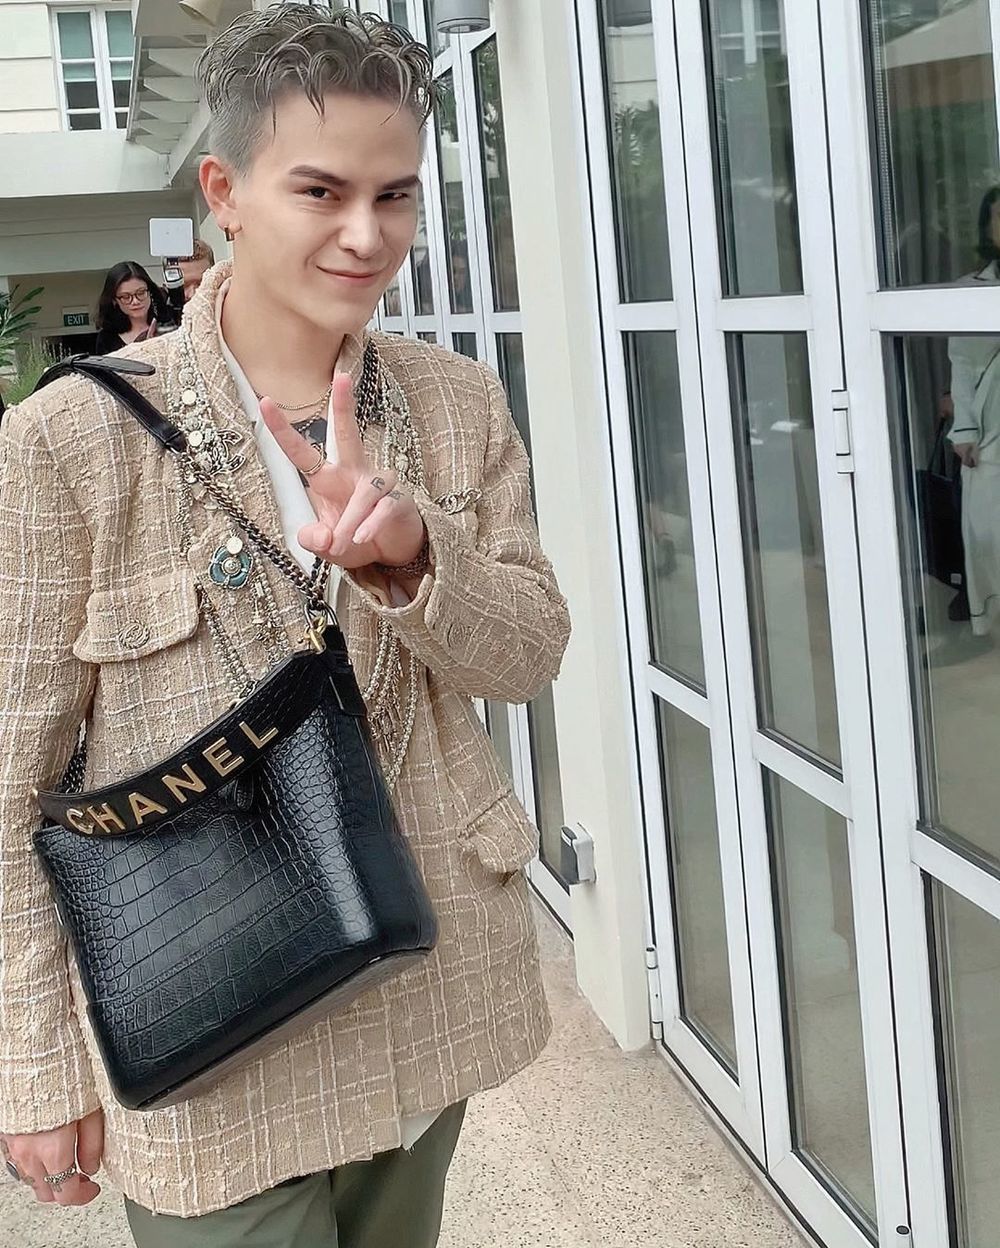 
Decao diện "cả cây" Chanel dự show nhà mốt Pháp, mẫu túi là điểm nhấn cho cả outfit của anh chàng. (Ảnh: Instagram nhân vật)